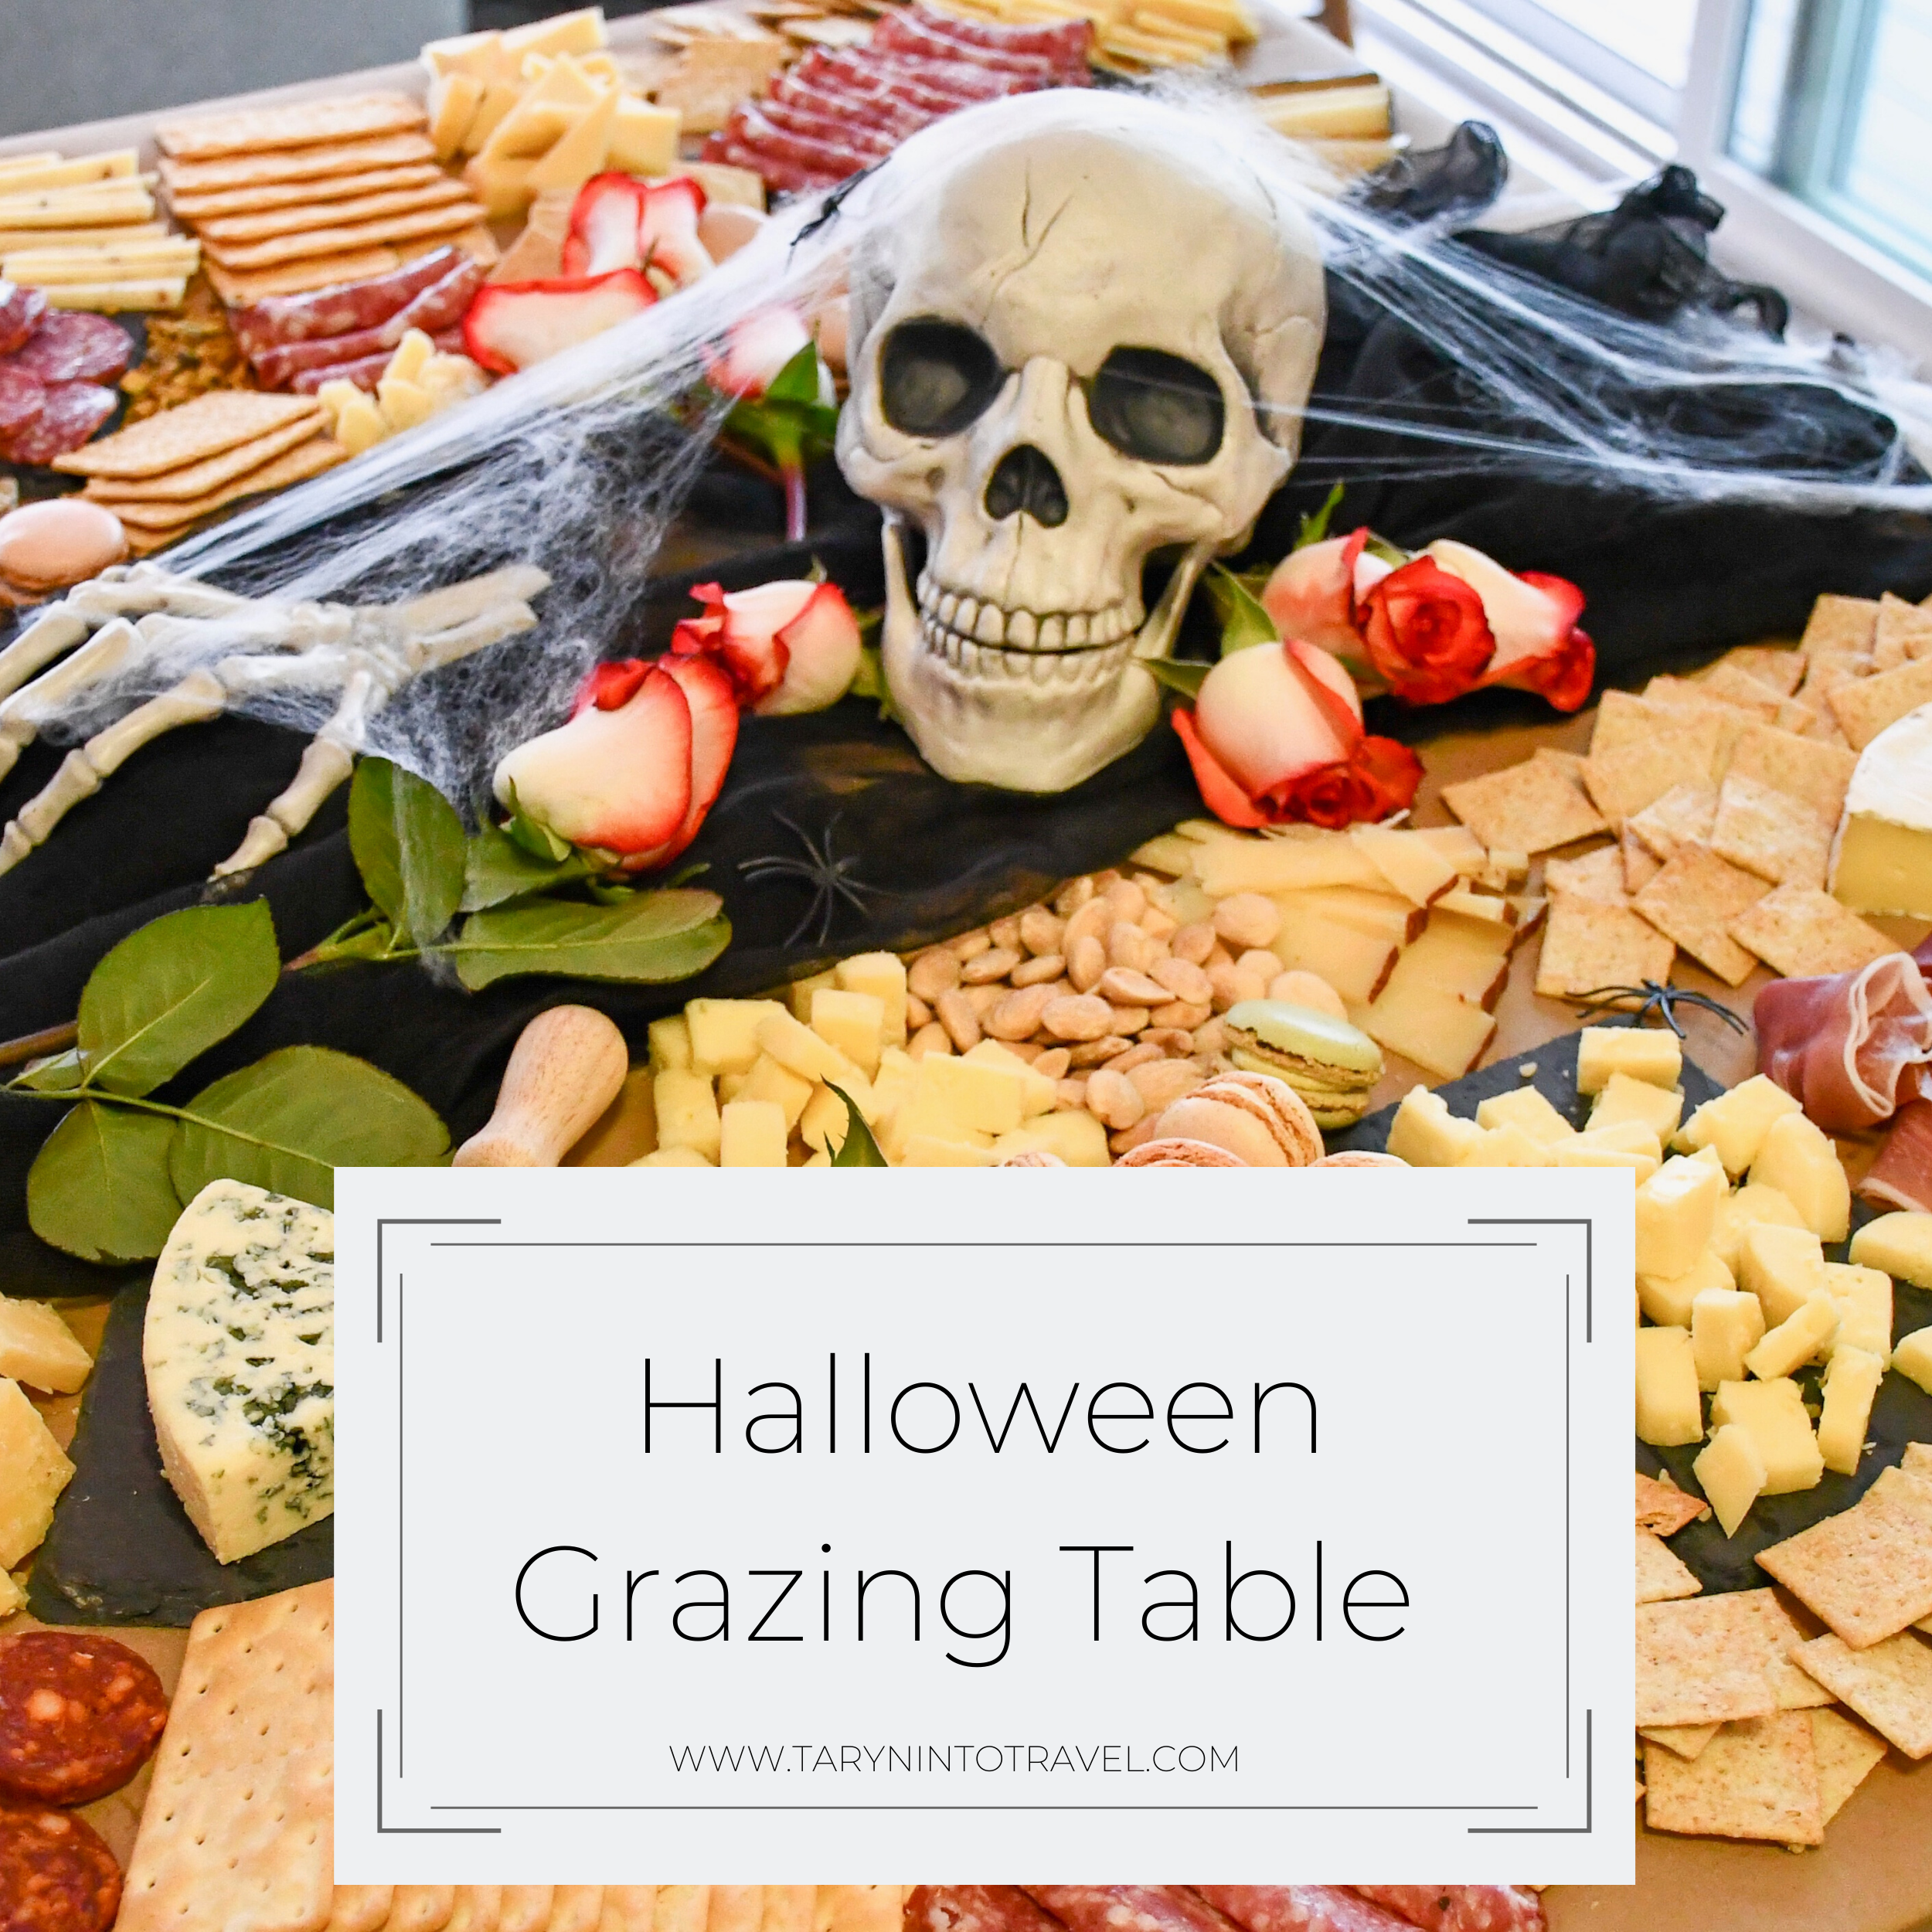 www.tarynintotravel.com | Halloween Grazing Table | #halloweengrazingtable #halloweenfood #halloweentablescape 1.png